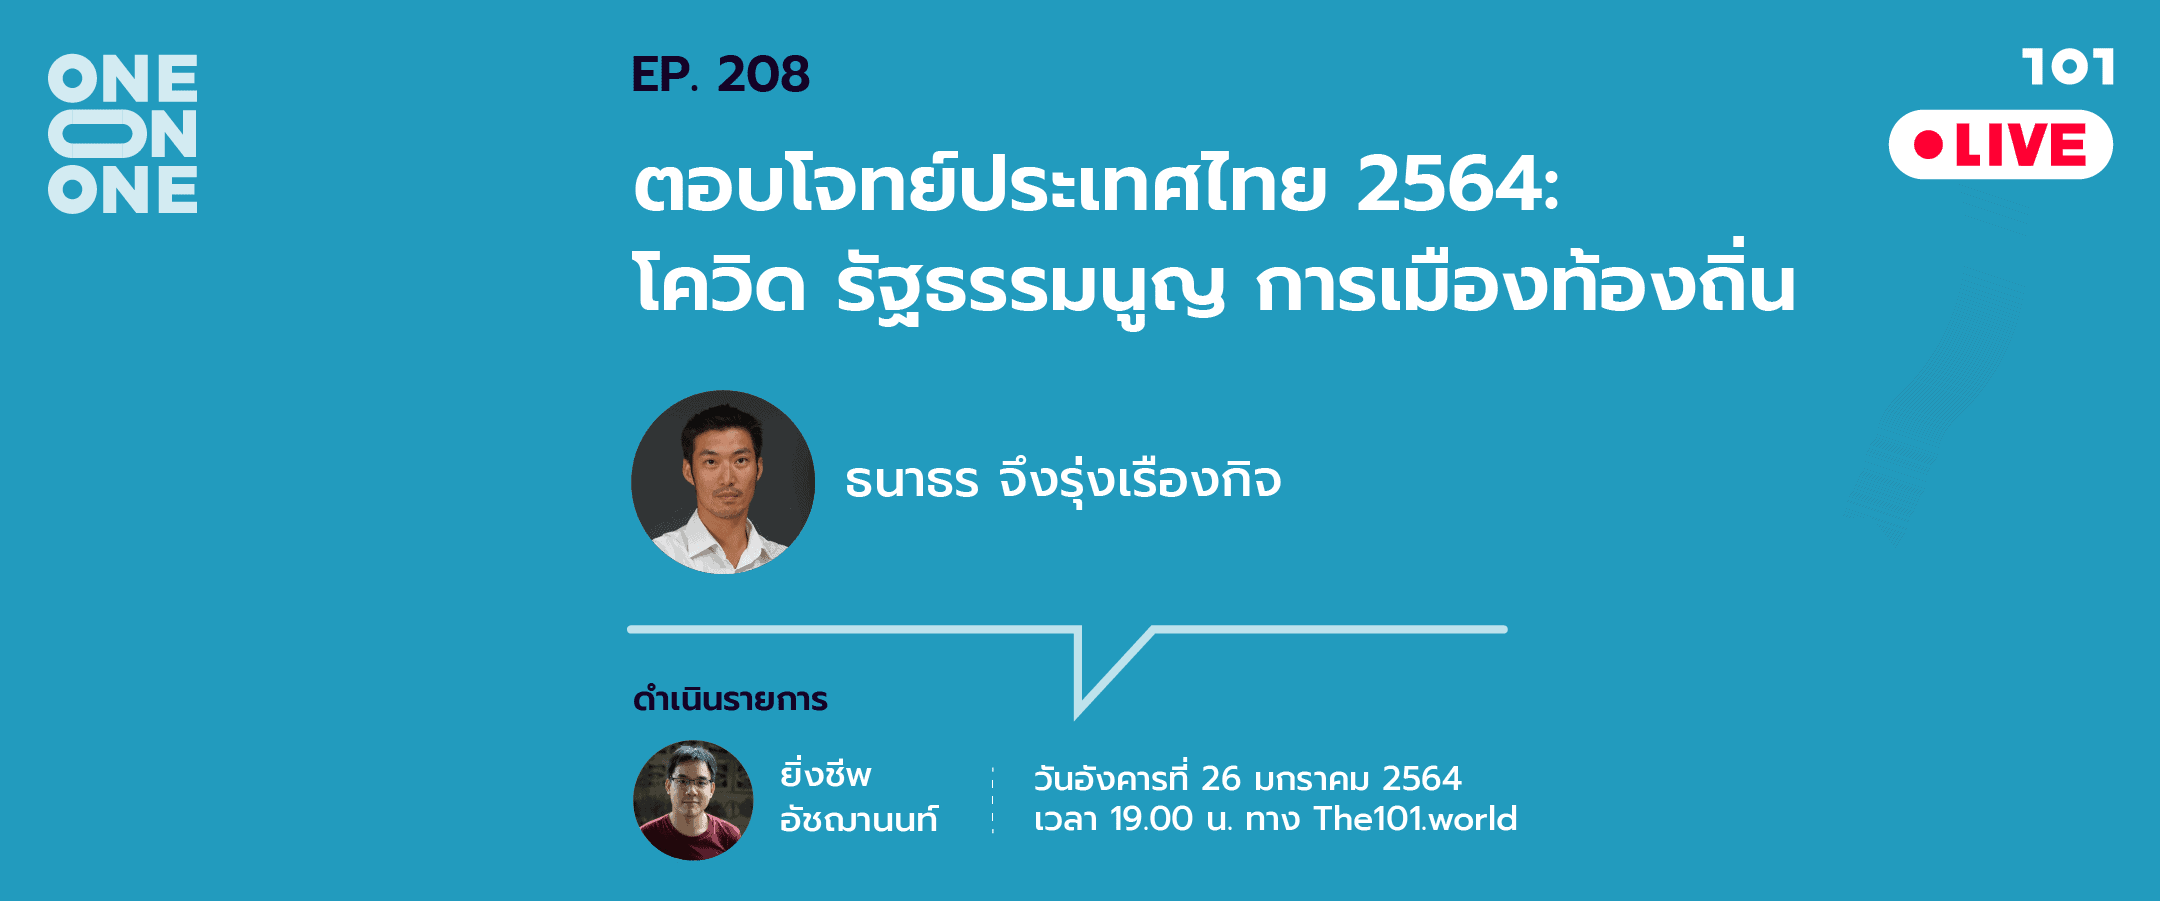 101 One-on-One Ep.208 ‘ตอบโจทย์ประเทศไทย 2564 : โควิด รัฐธรรมนูญ การเมืองท้องถิ่น’ กับ ธนาธร จึงรุ่งเรืองกิจ